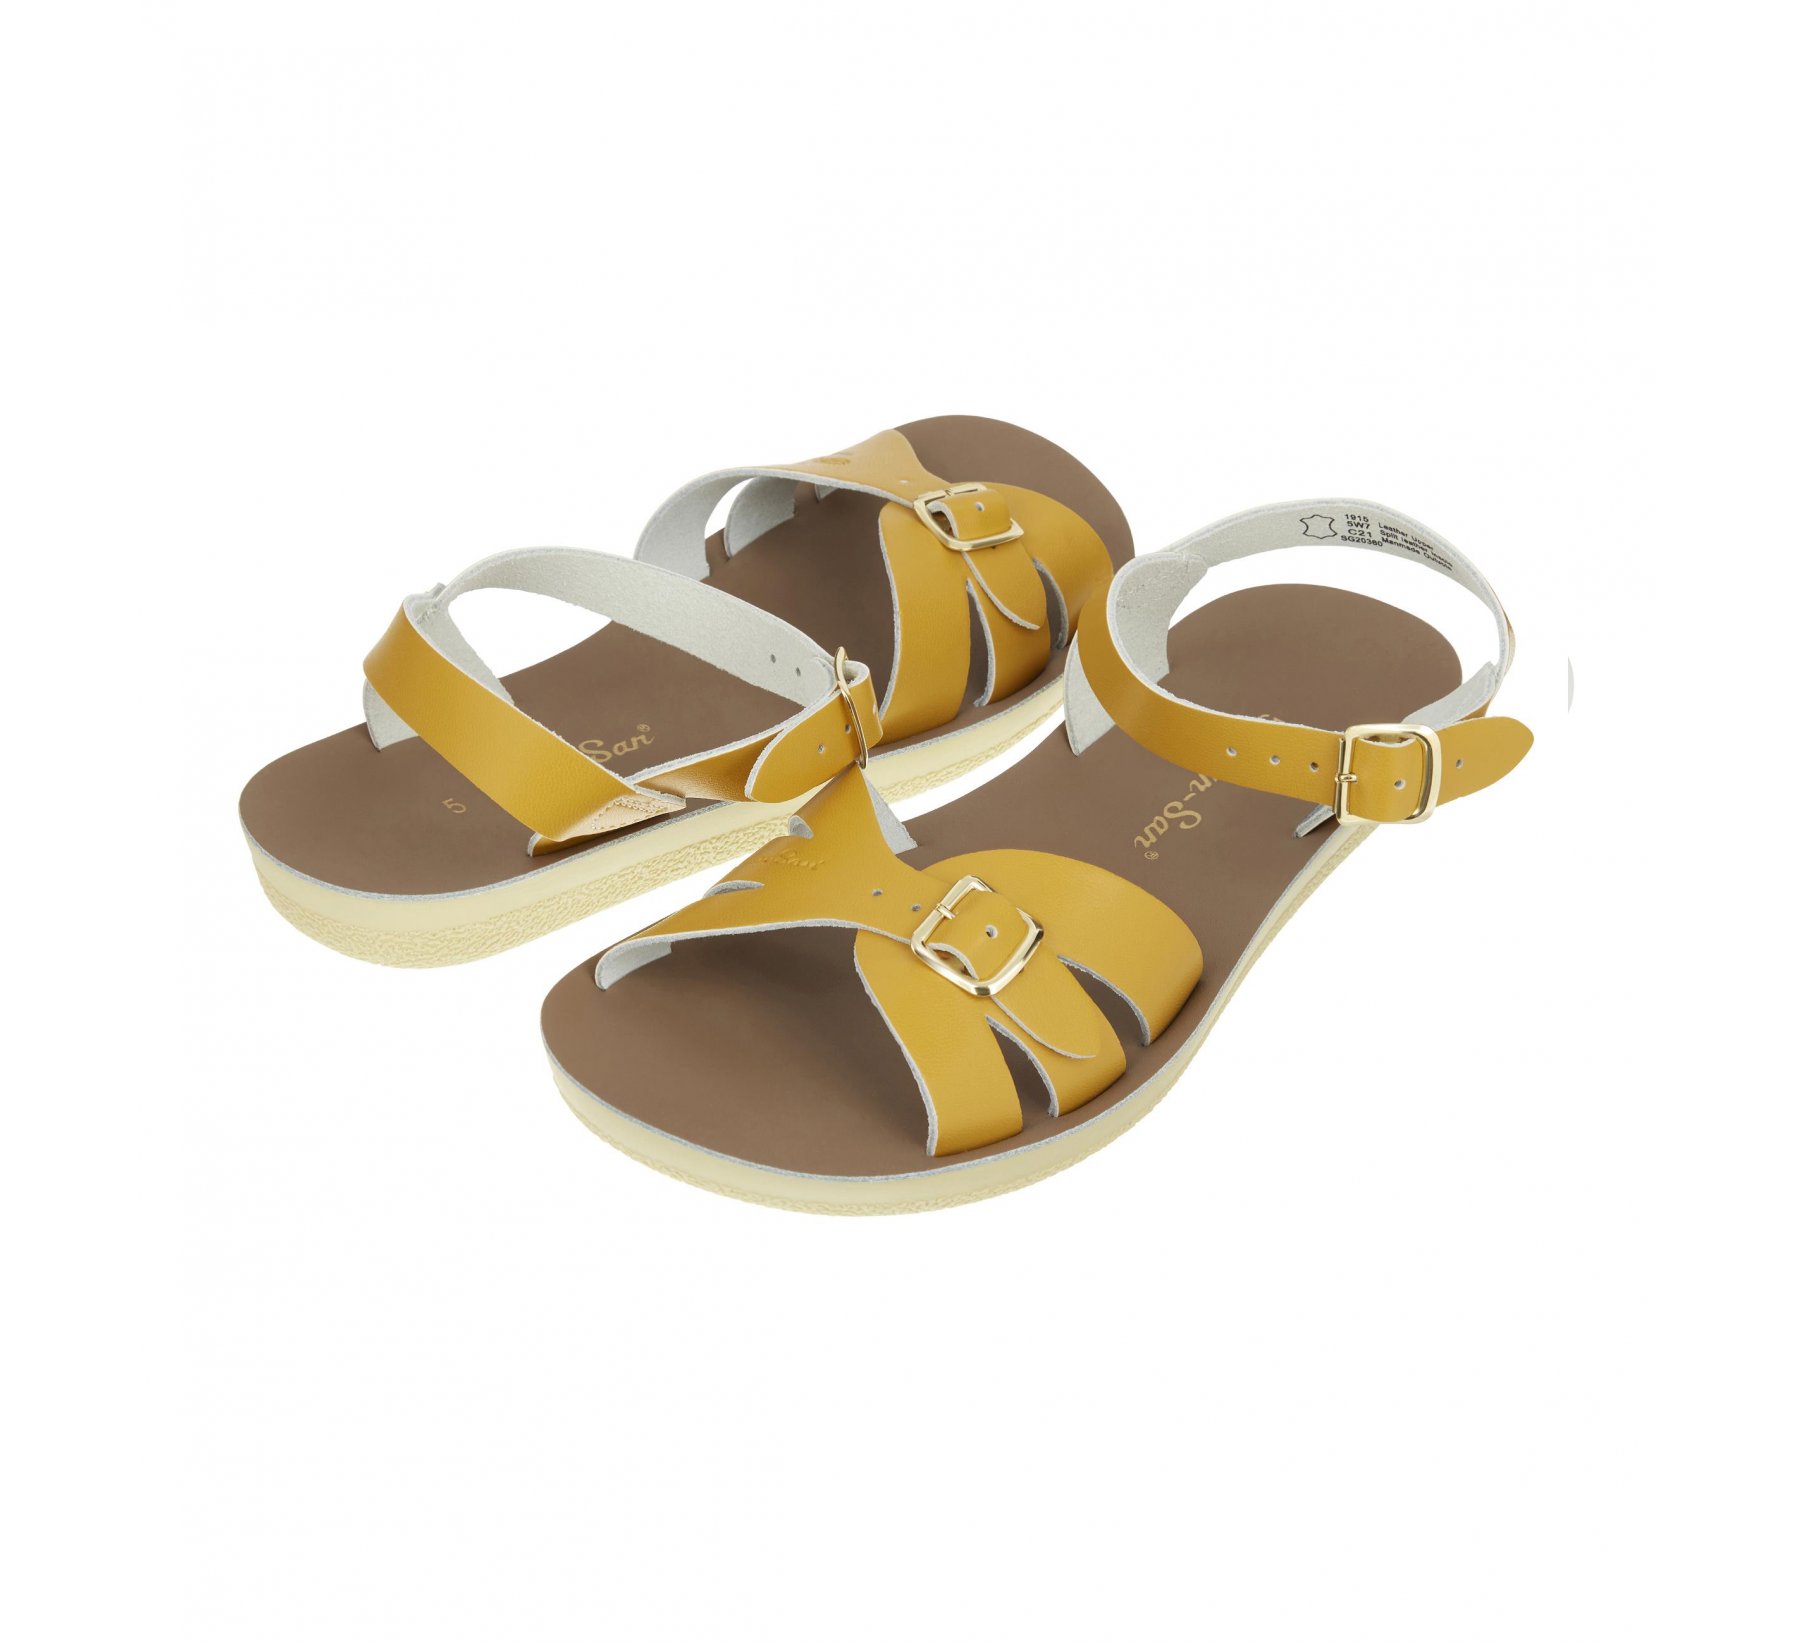 Boardwalk Mustard - Salt Water Sandals